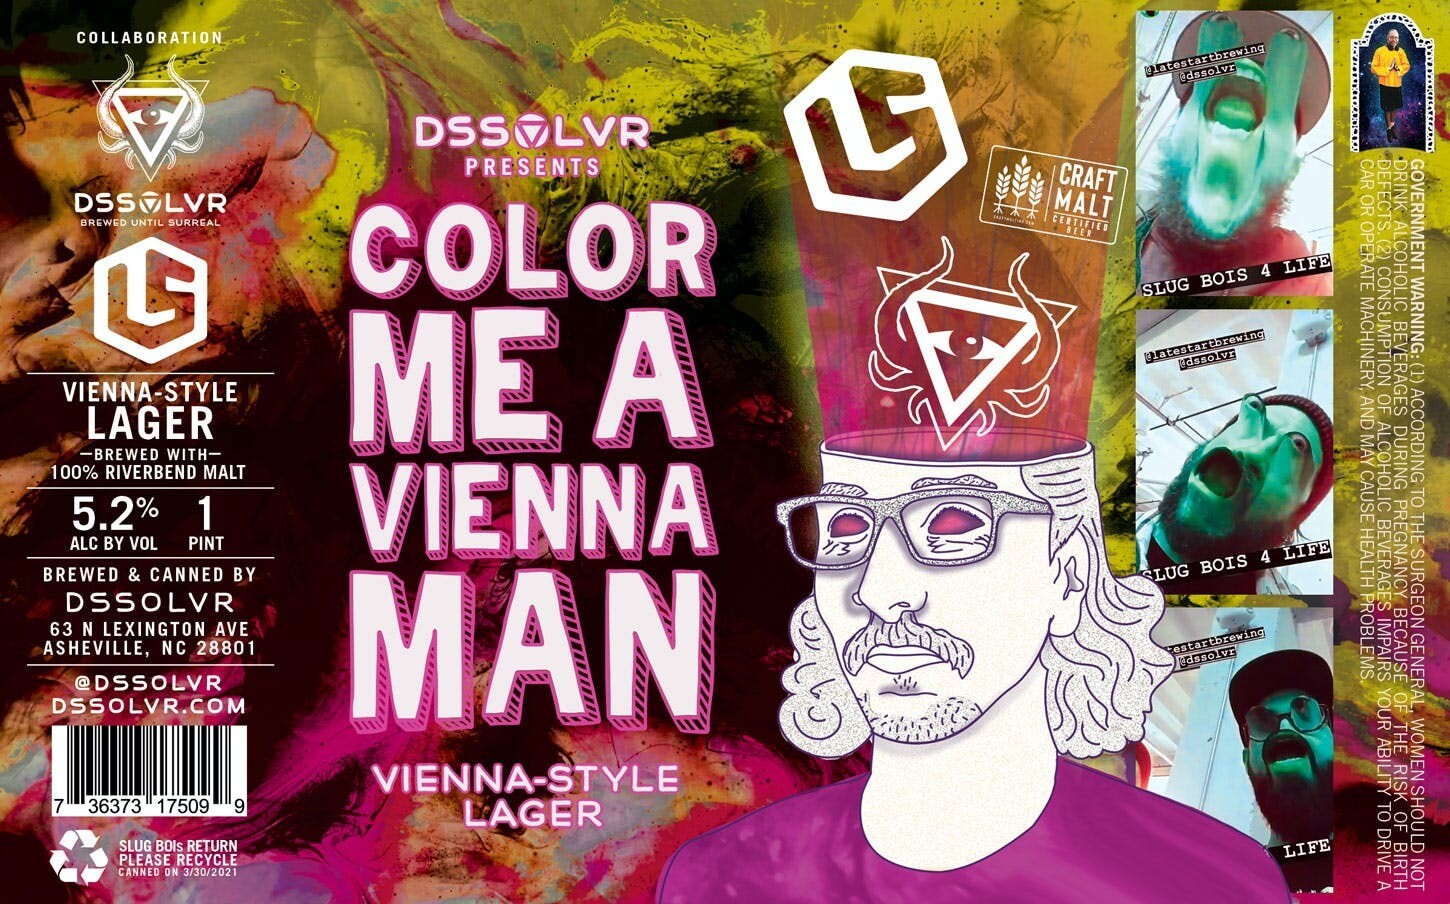 DSSOLVR Color me a Vienna Man Lager 4pk